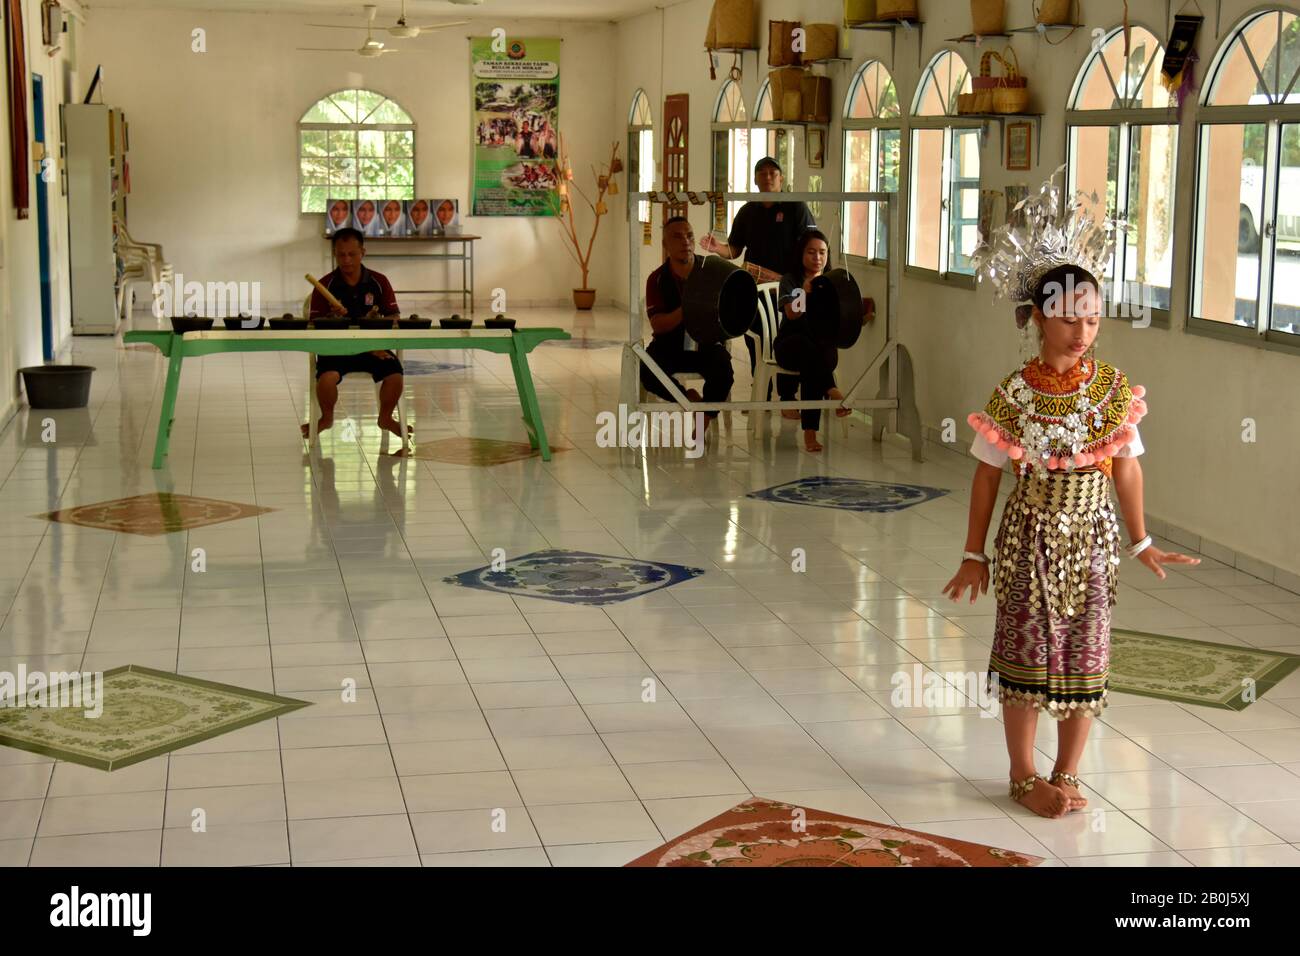 Fille présente une danse traditionnelle De L'Iban, typique de la population indigène de la région d'Ulu Temburong, Brunei Banque D'Images